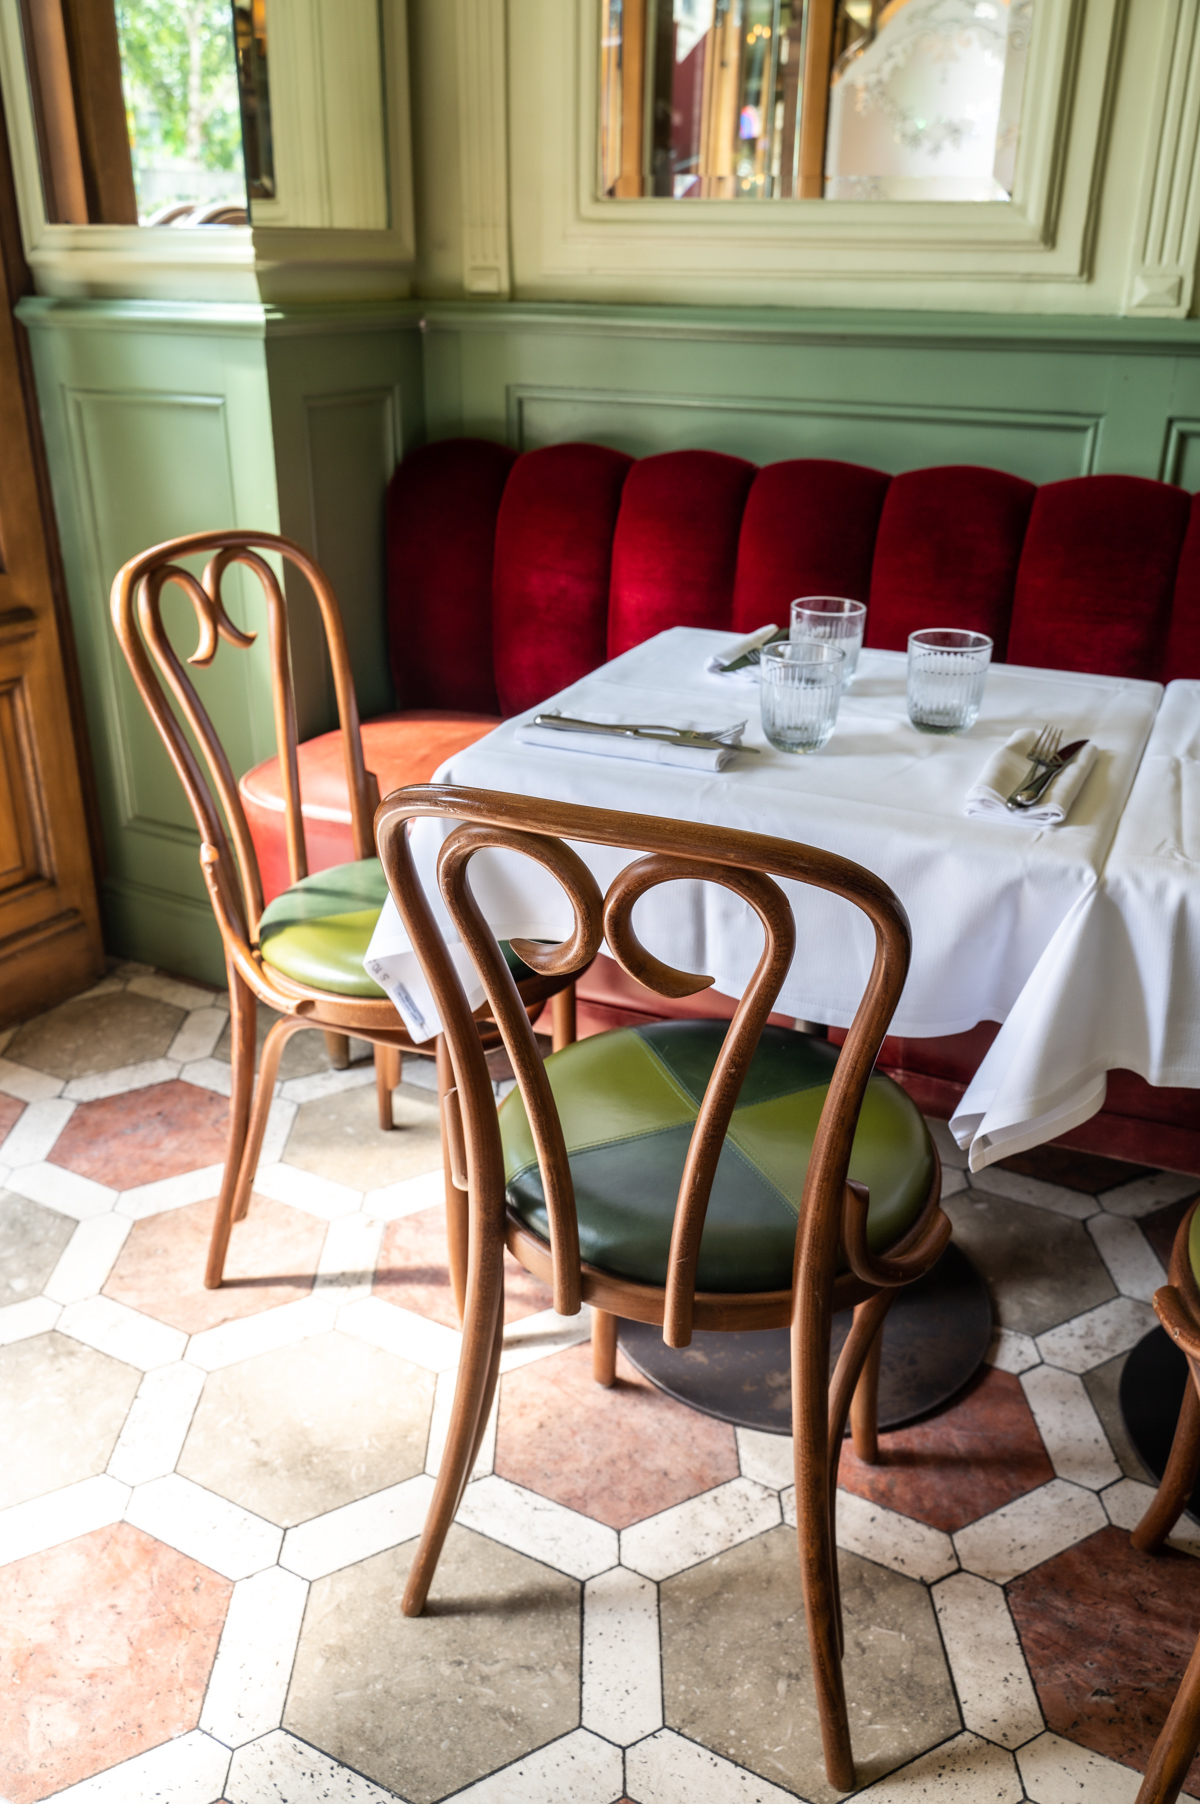 Stacie Flinner Best restaurants in Paris Le Chardenoux Cyril Lignac-6.jpg